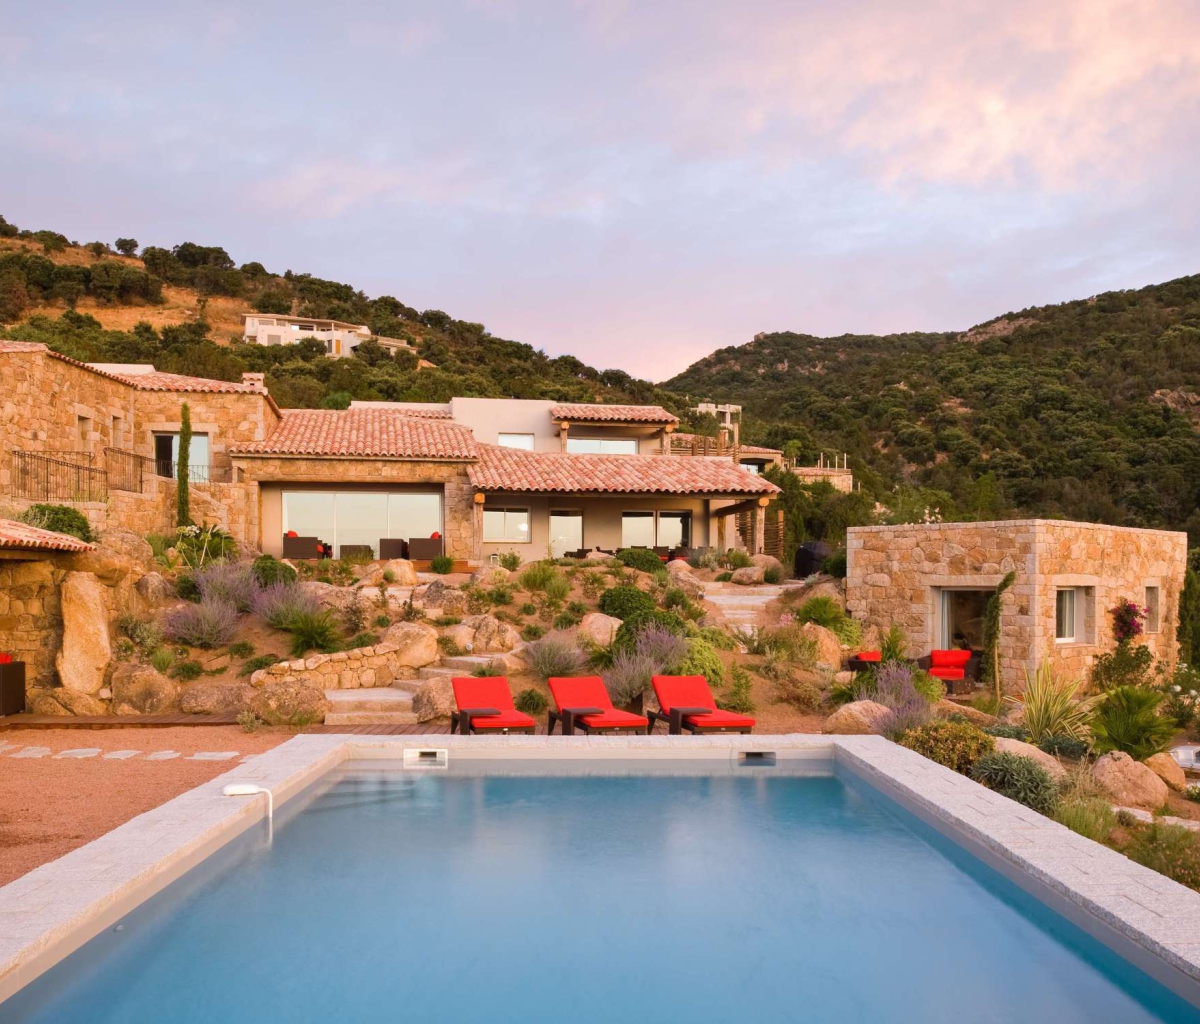 Villa Luna, Corsica, France screenshot #1 1200x1024